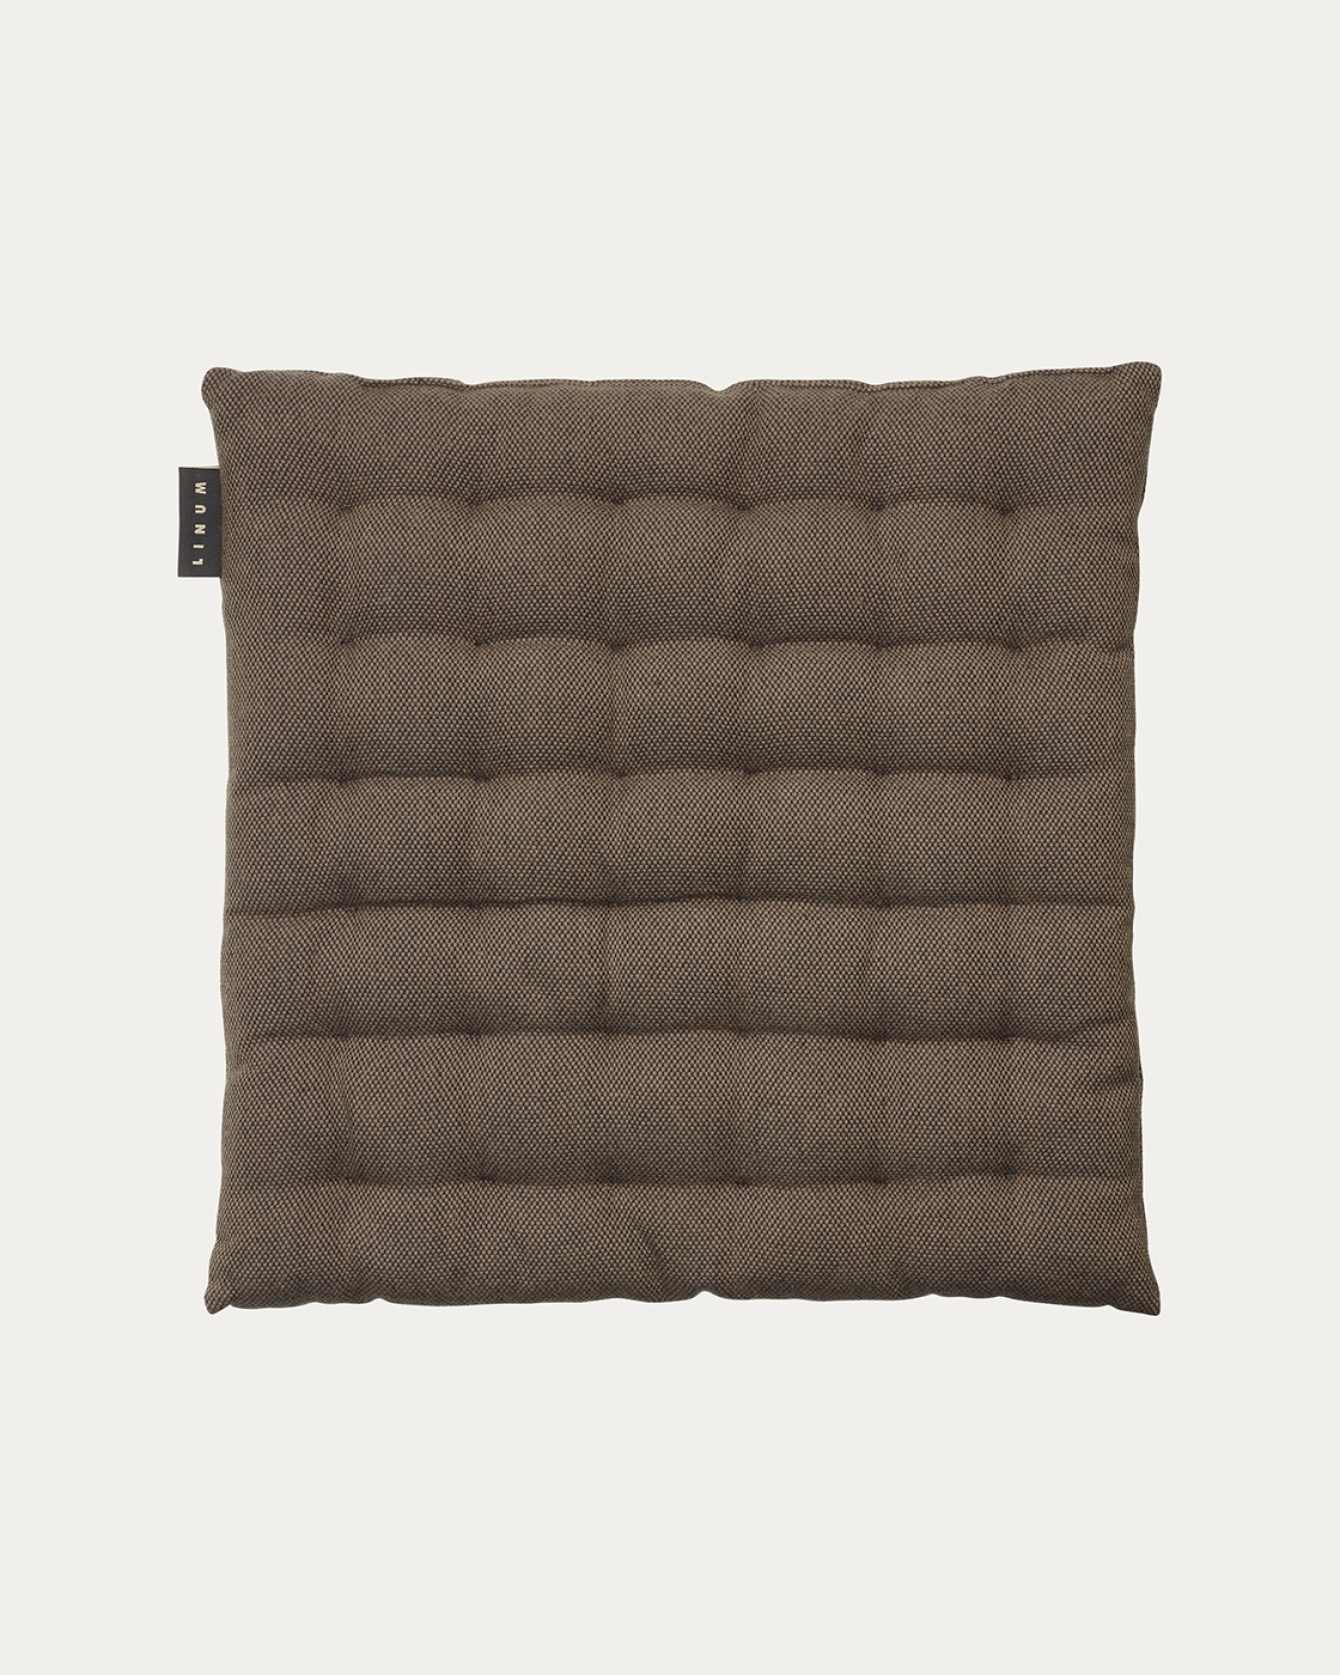 PEPPER Seat cushion 40x40 cm Bear brown